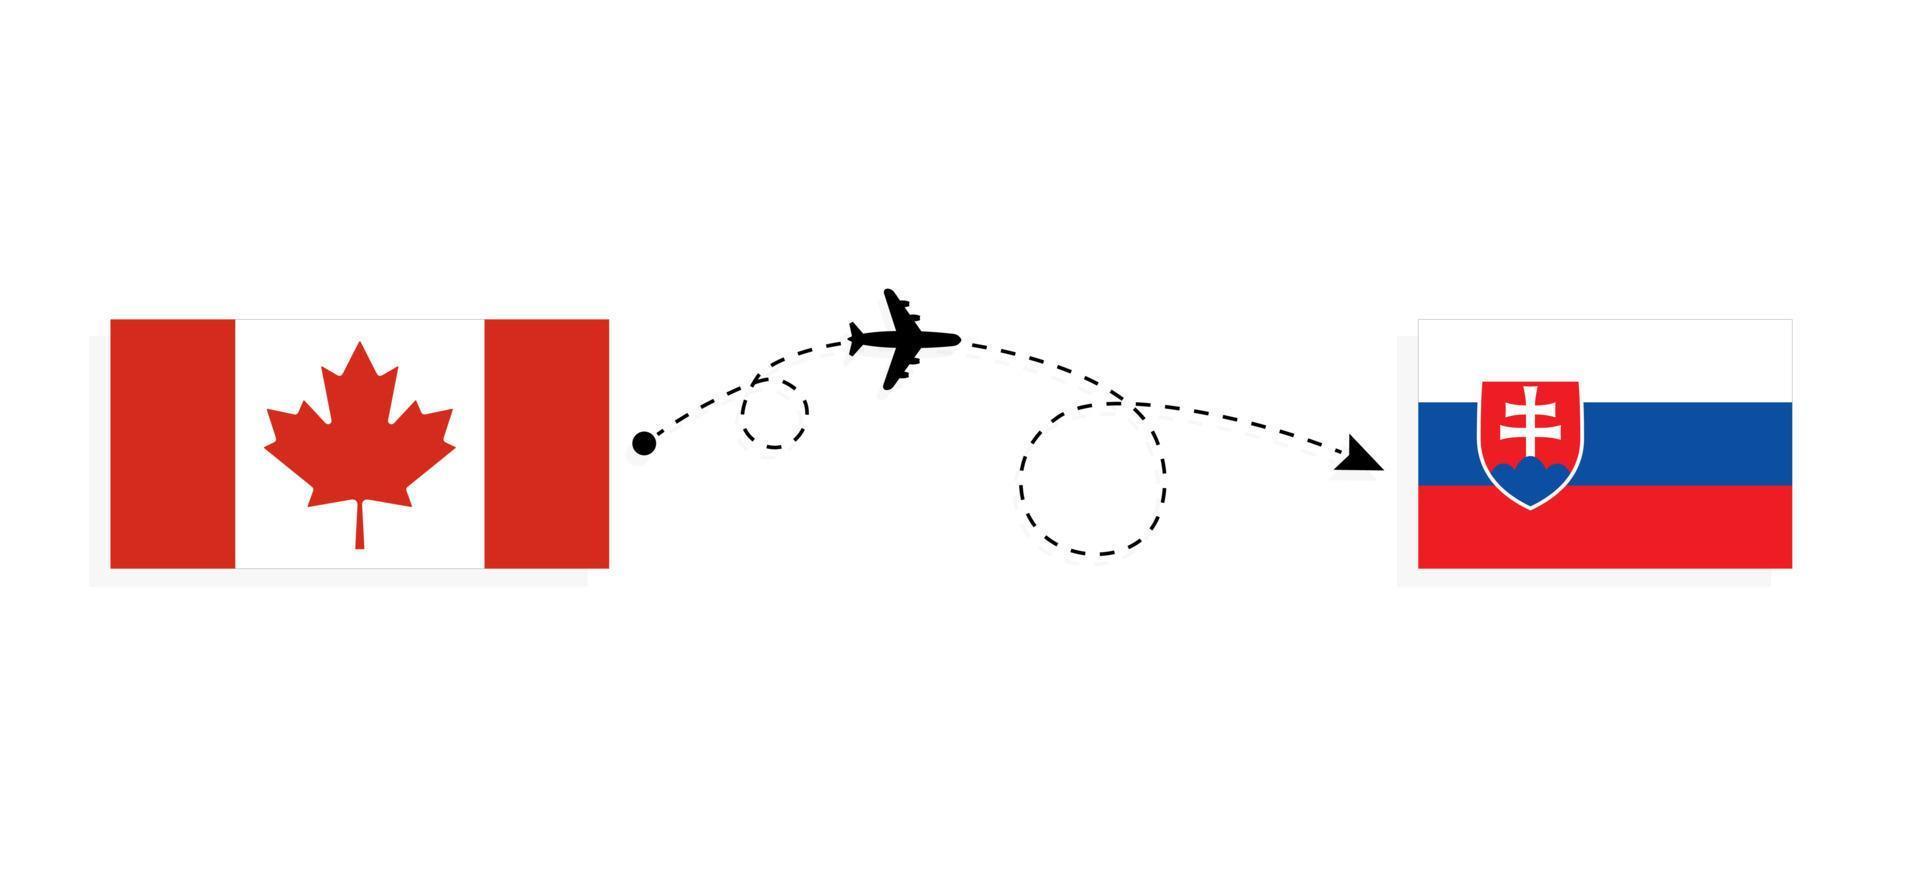 vuelo y viaje desde canadá a eslovaquia en avión de pasajeros concepto de viaje vector